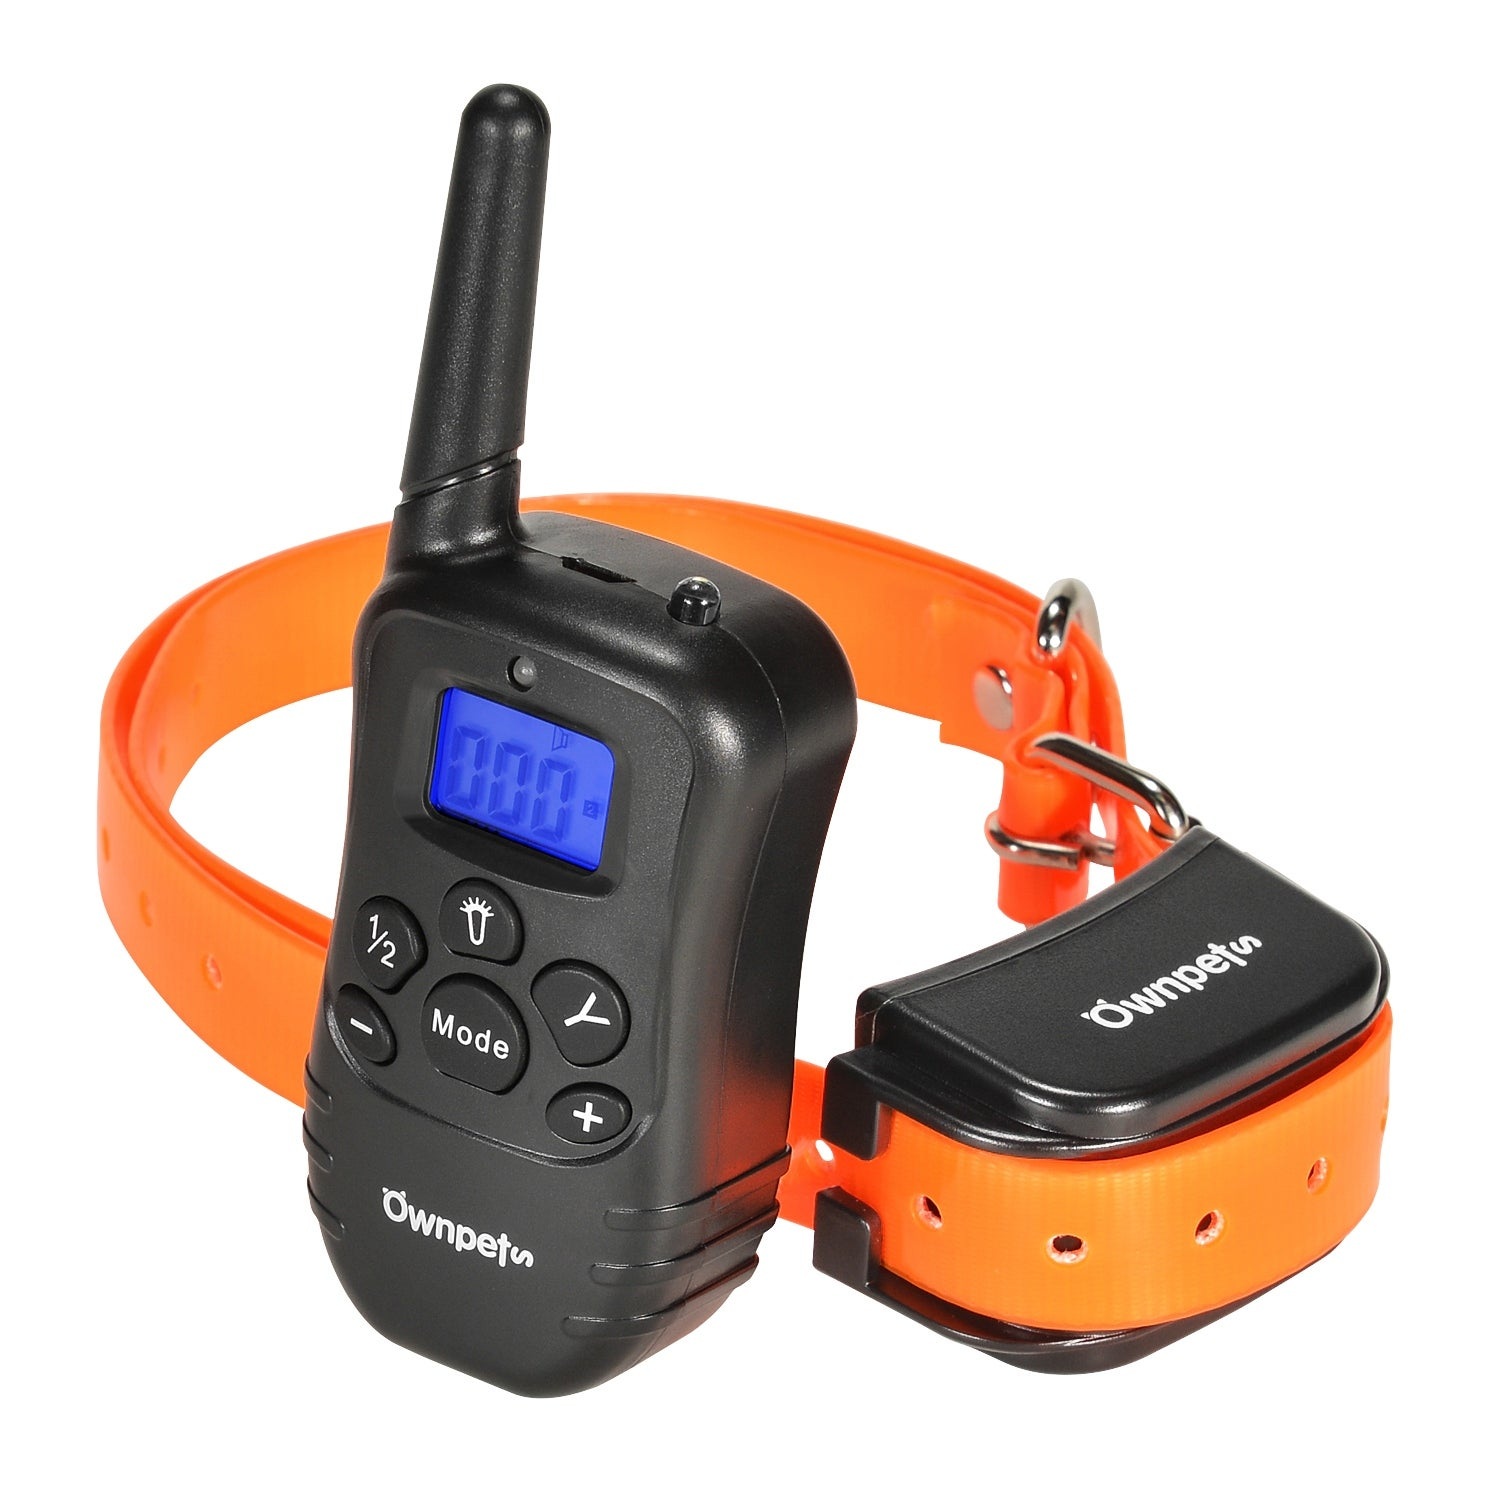 AGPTEK Ownpets Remote Controlled Dog Training Collar Remote Transmitter User Manual